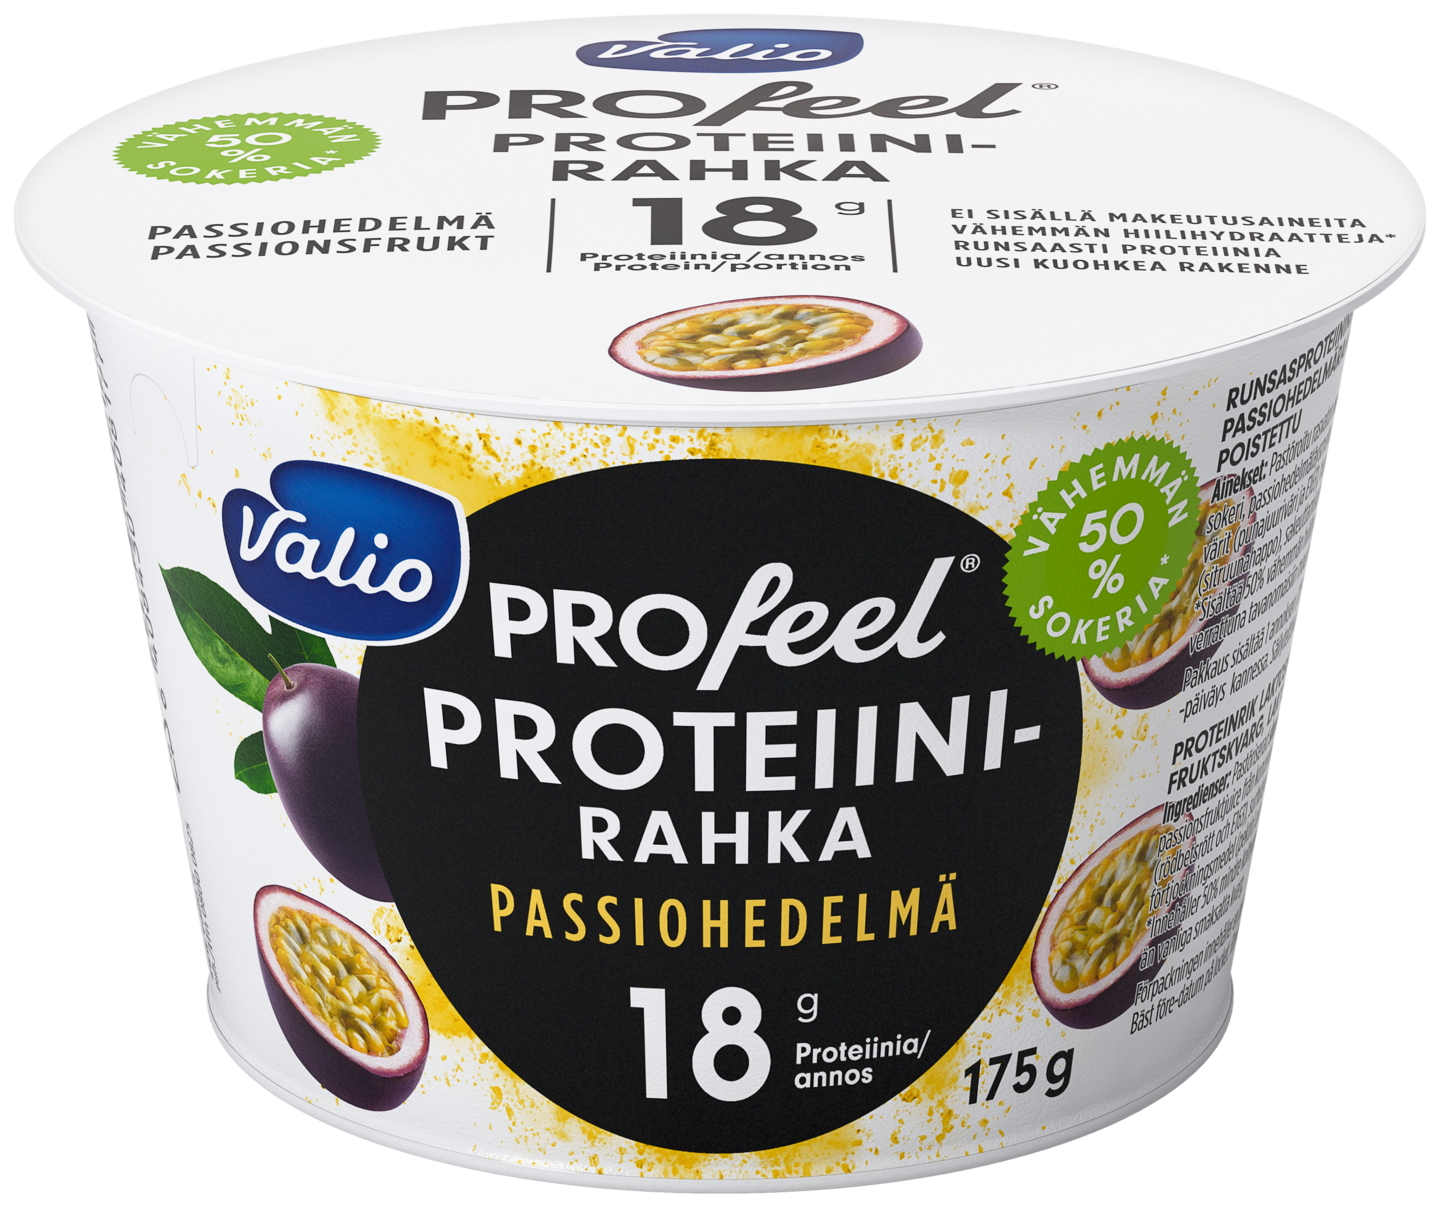 Valio Profeel proteiinirahka 175g passiohedelmä vähemmän hiilihydraatteja laktoositon